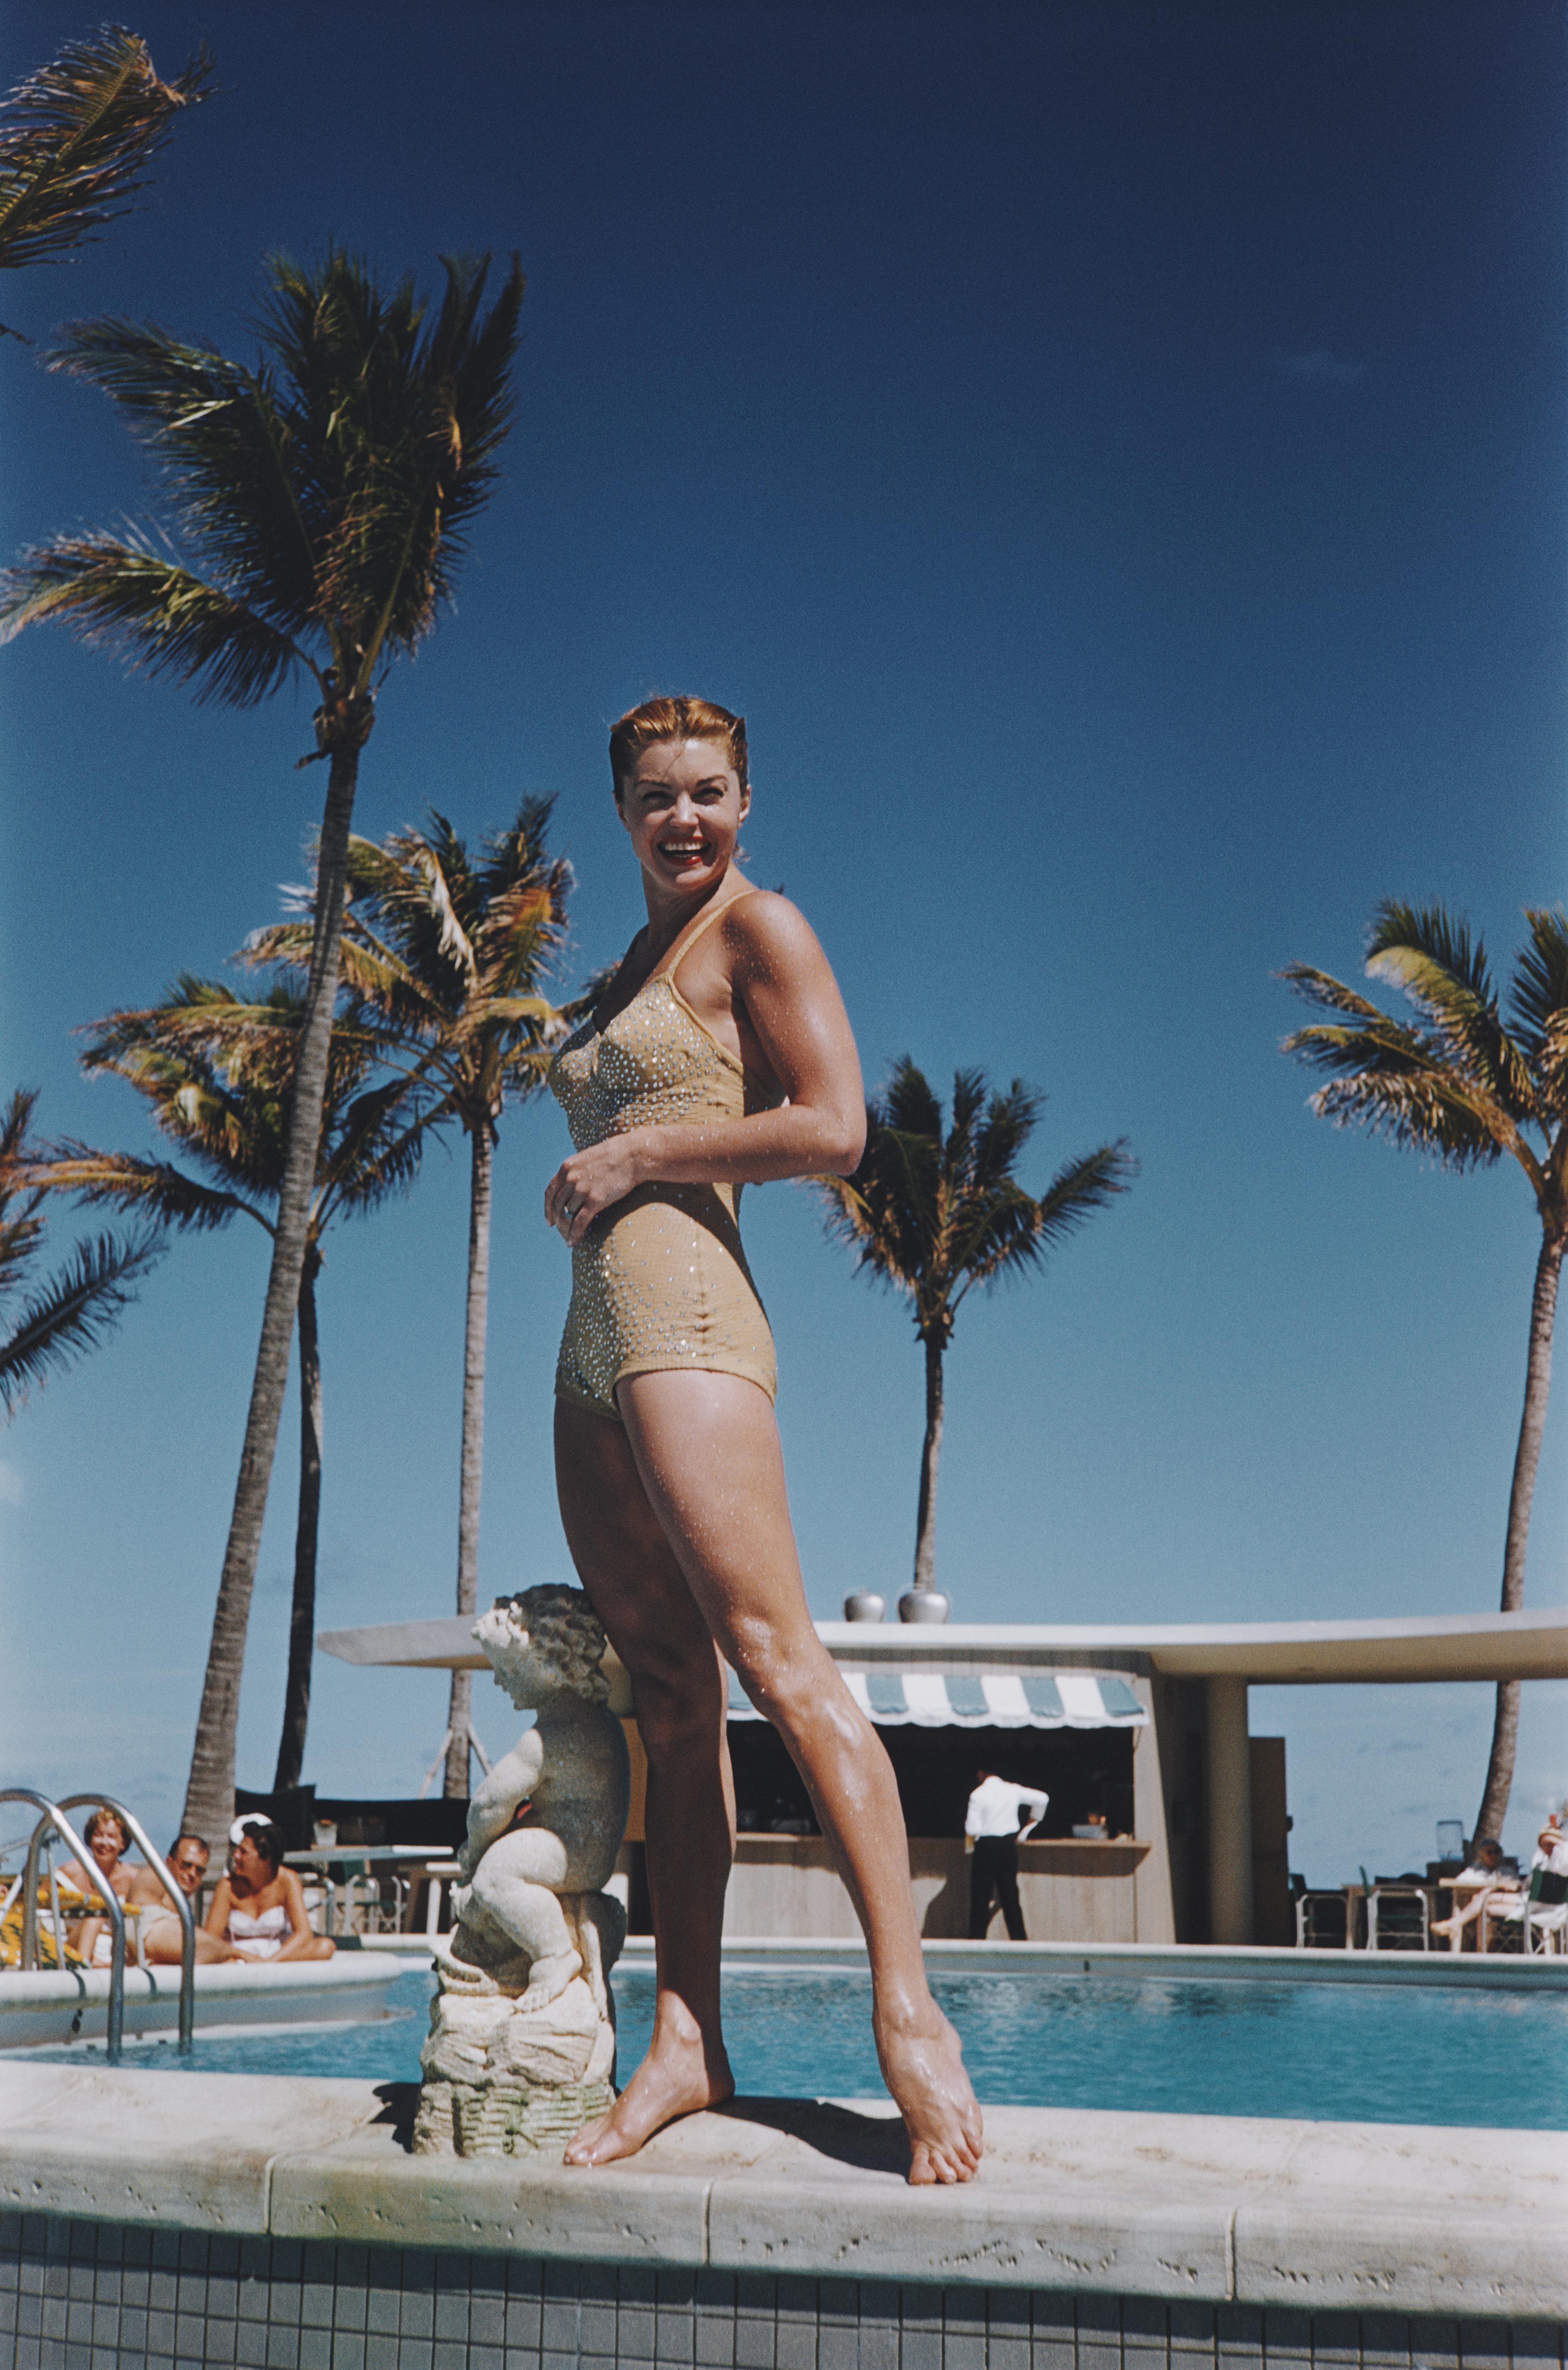 La nageuse et star de cinéma Esther Williams au bord de la piscine en Floride, 1955.

Slim Aarons
Esther Williams
Tirage chromogène Lambda 
Slim Aarons Estate Edition

Livraison gratuite par le revendeur à votre encadreur.

60 x 40 pouces
$3950

40